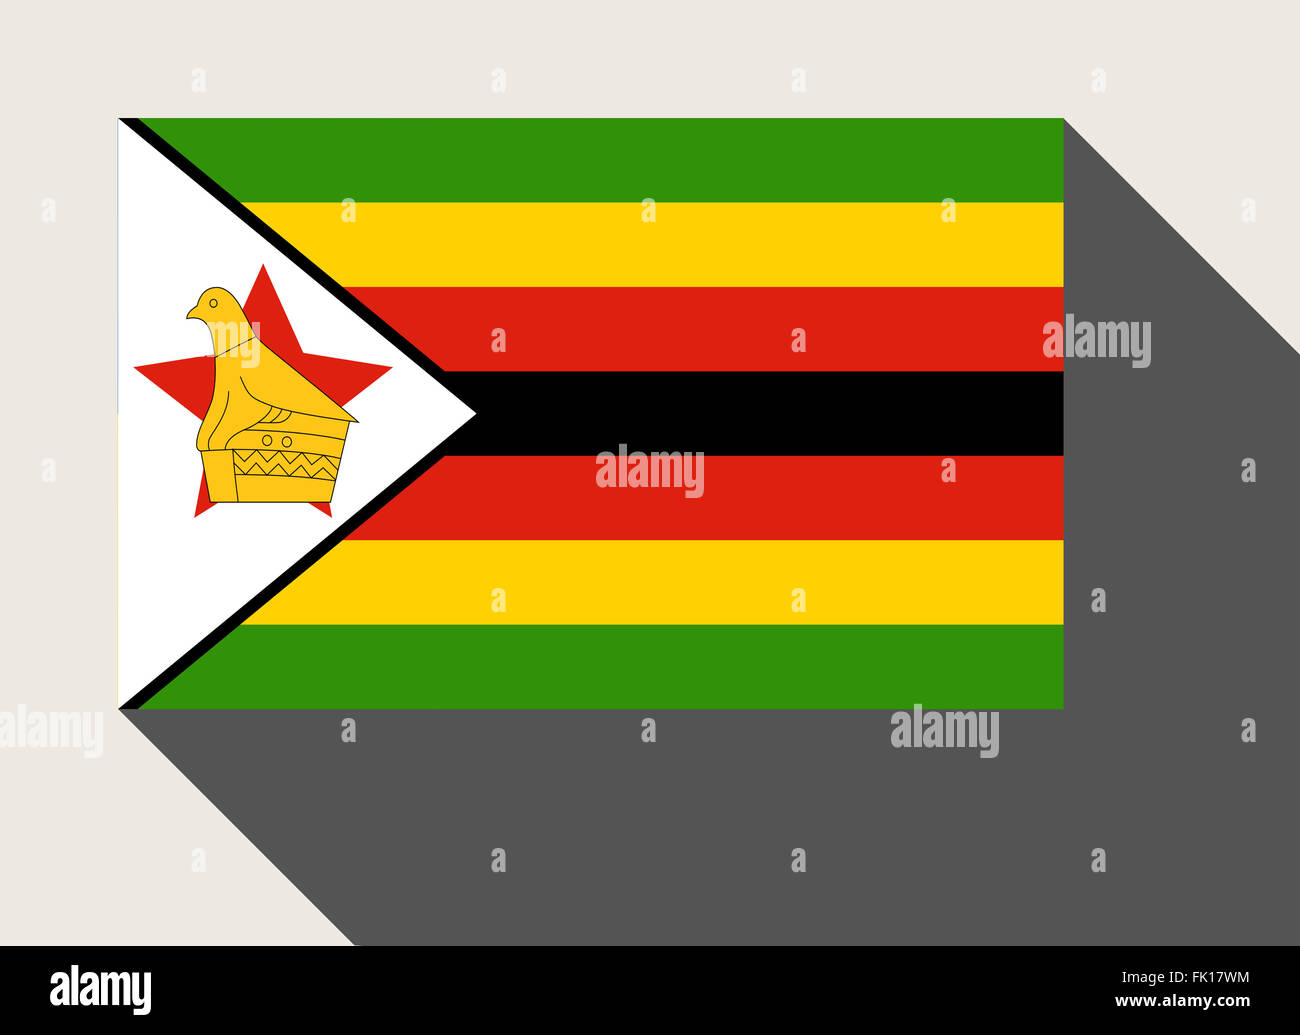 Zimbabwe flag in flat web design style. Stock Photo